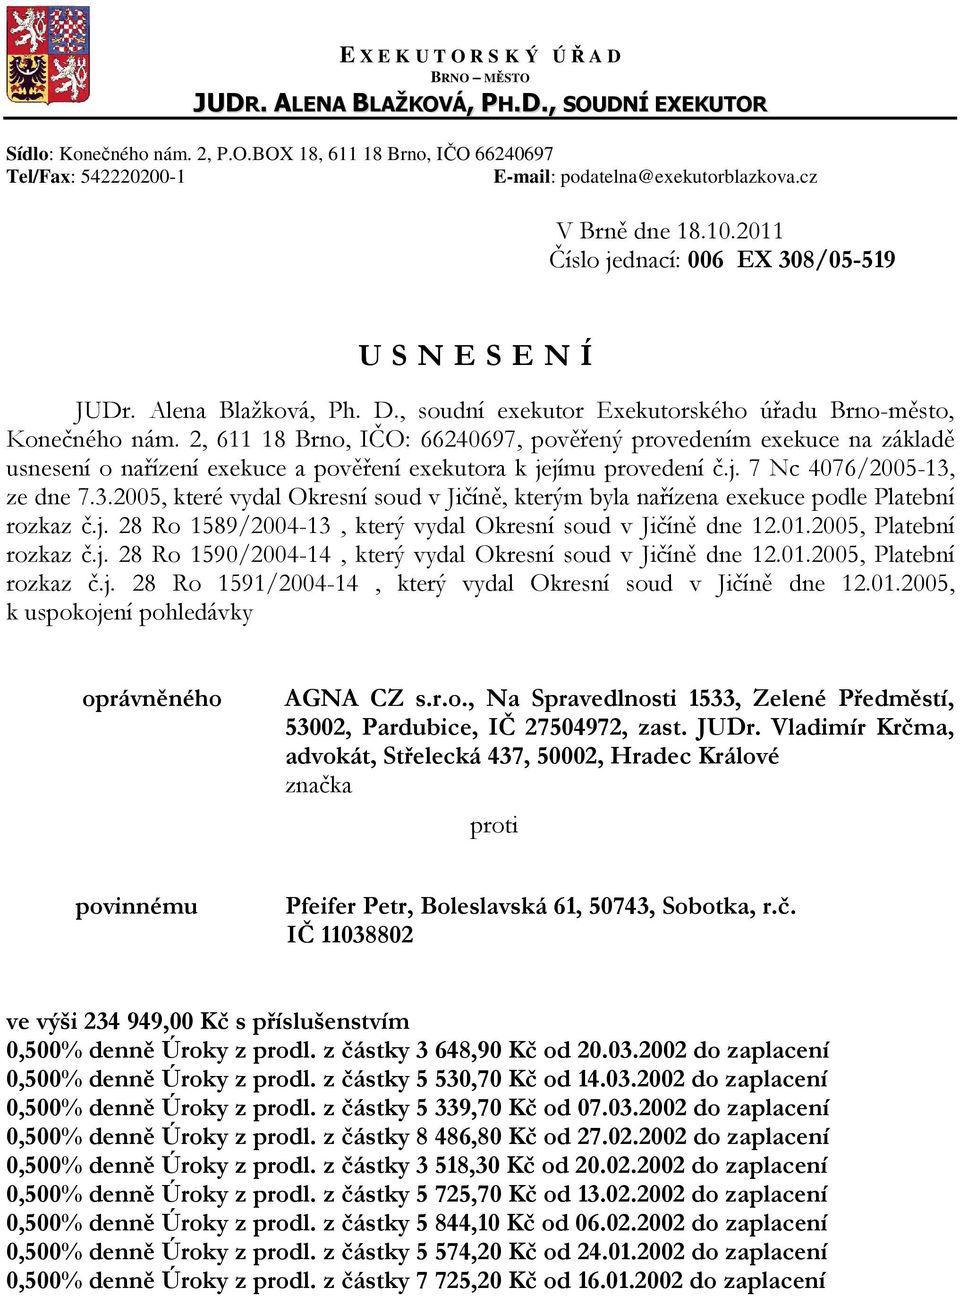 2, 611 18 Brno, IČO: 66240697, pověřený provedením exekuce na základě usnesení o nařízení exekuce a pověření exekutora k jejímu provedení č.j. 7 Nc 4076/2005-13,